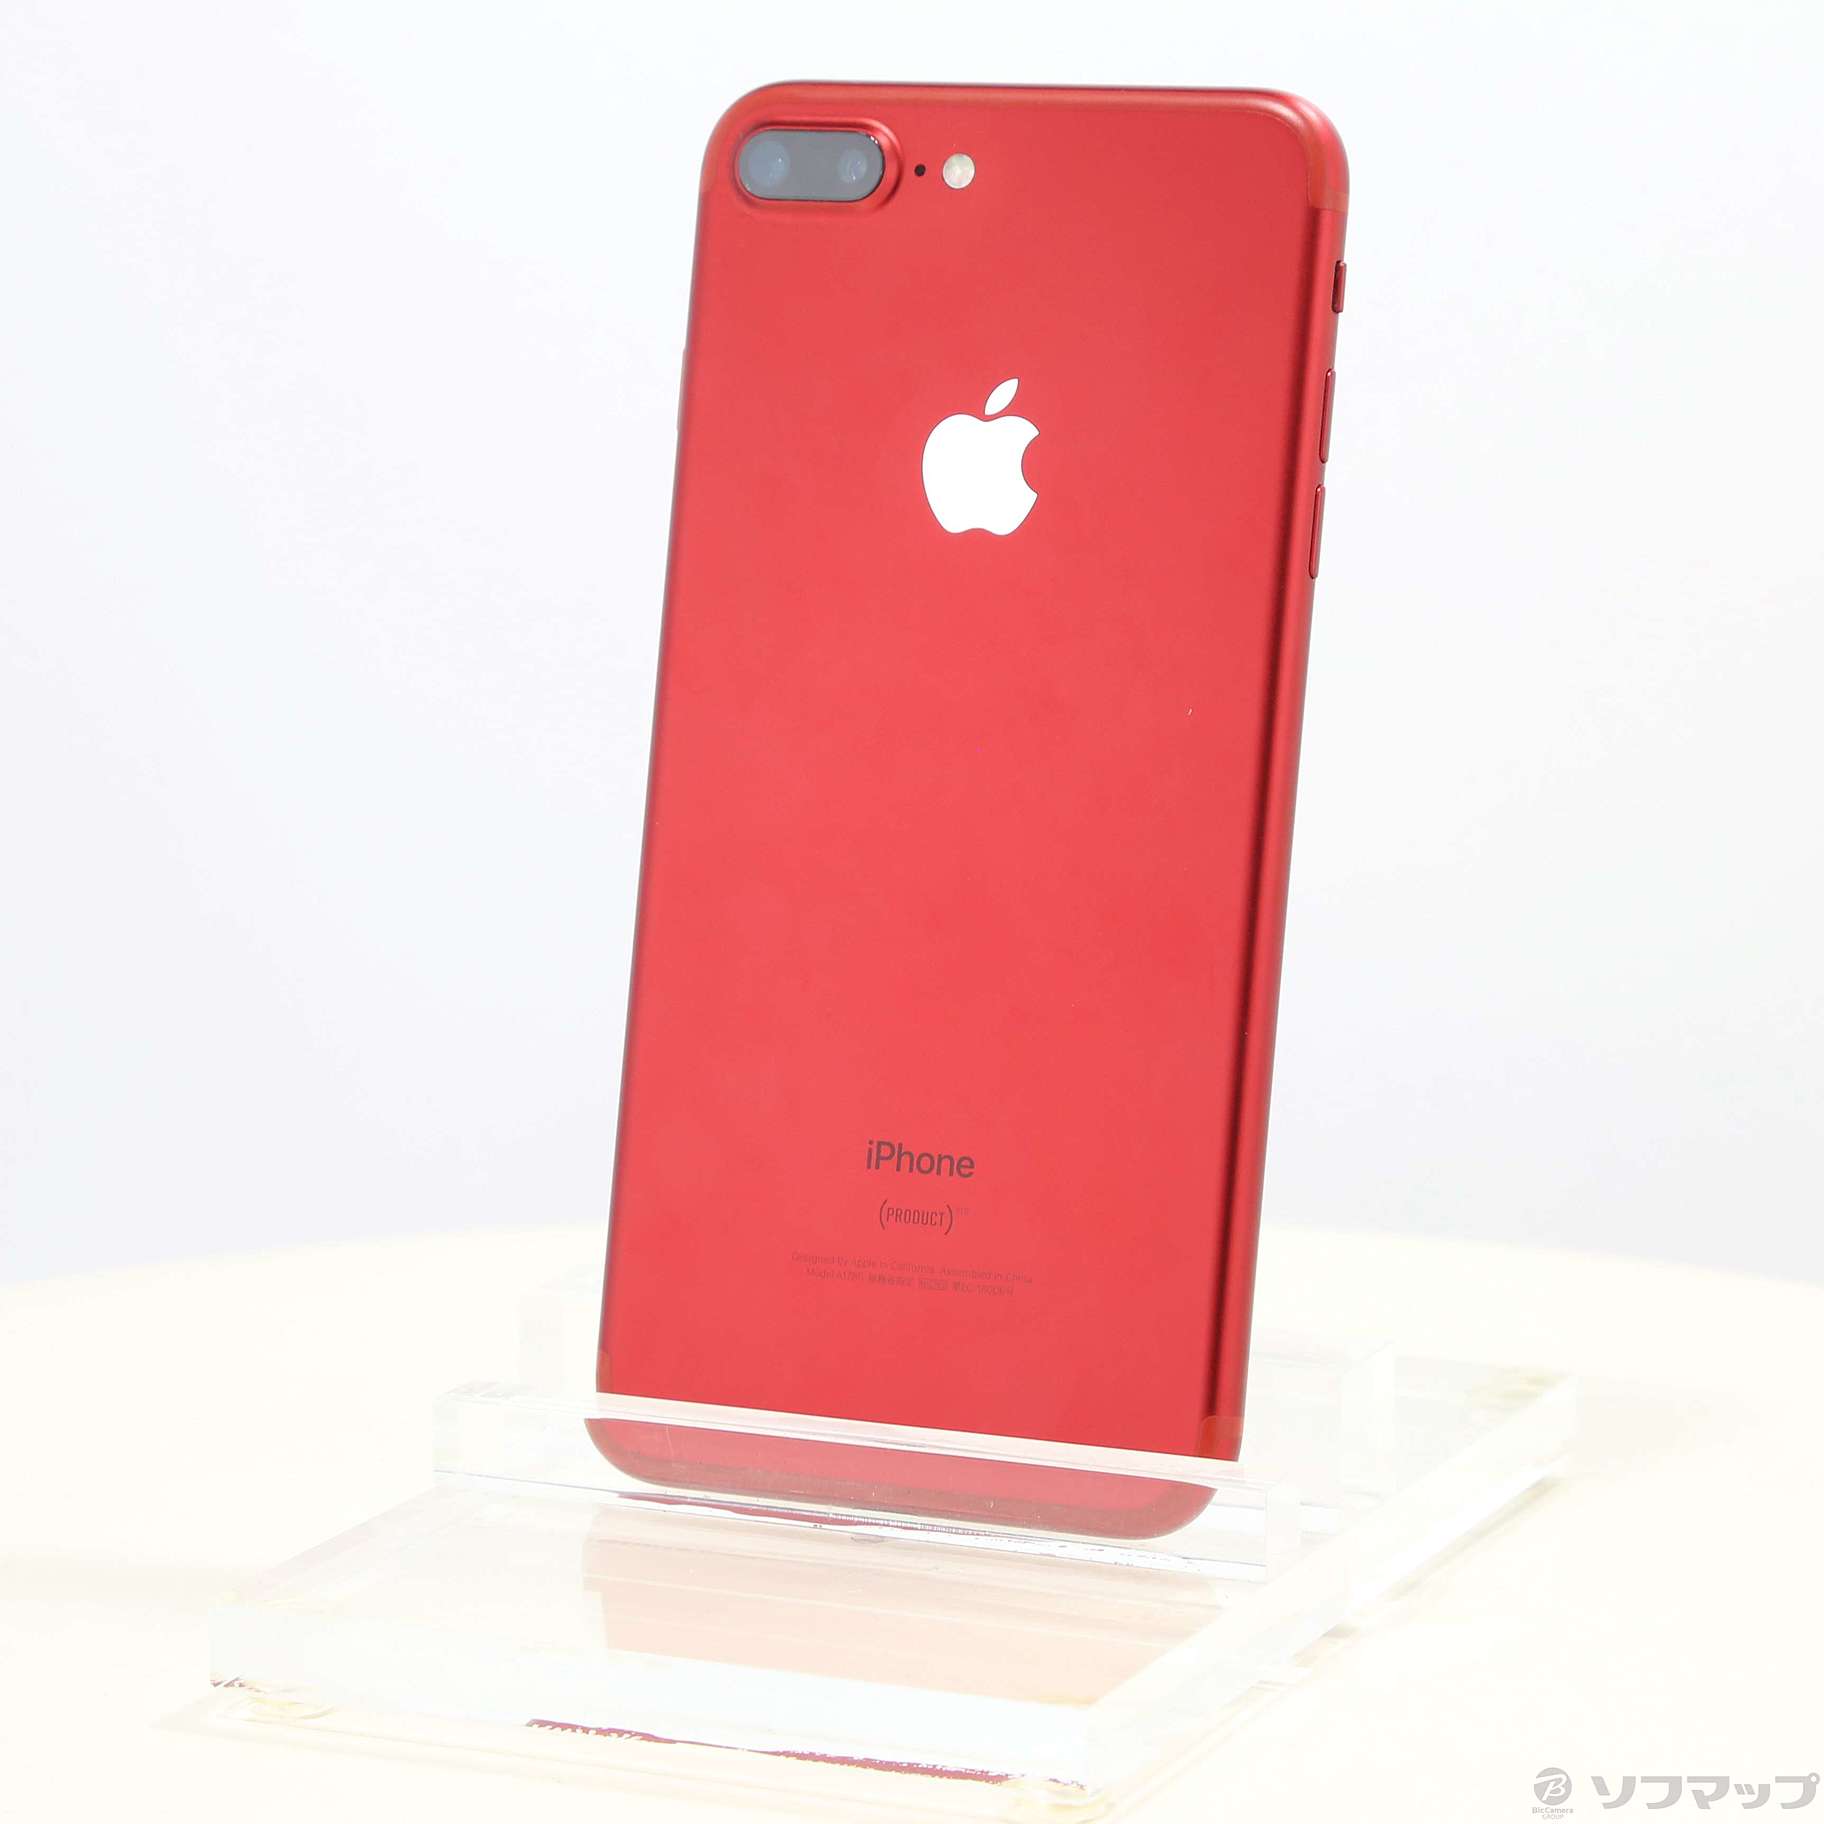 iPhone7 Red 256GB SIMフリースマートフォン本体 - スマートフォン本体